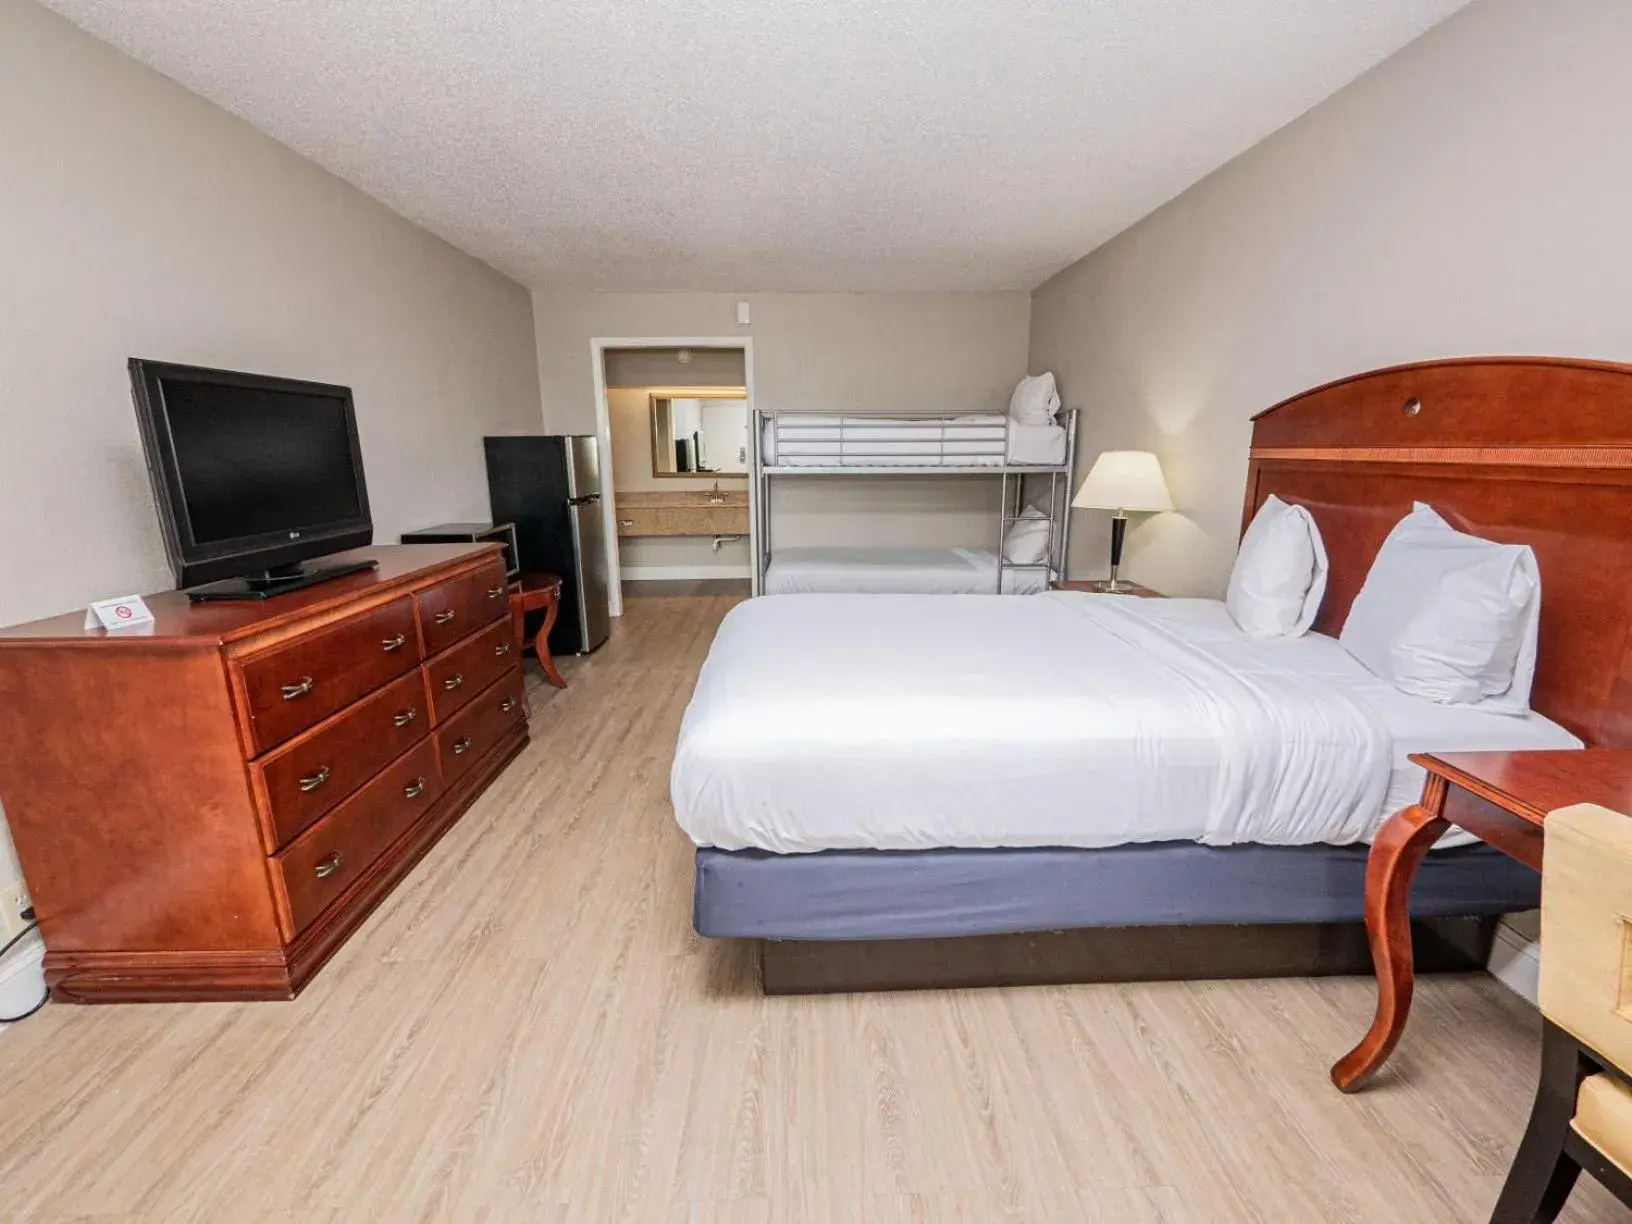 Bedroom in Stayable Suites Lakeland